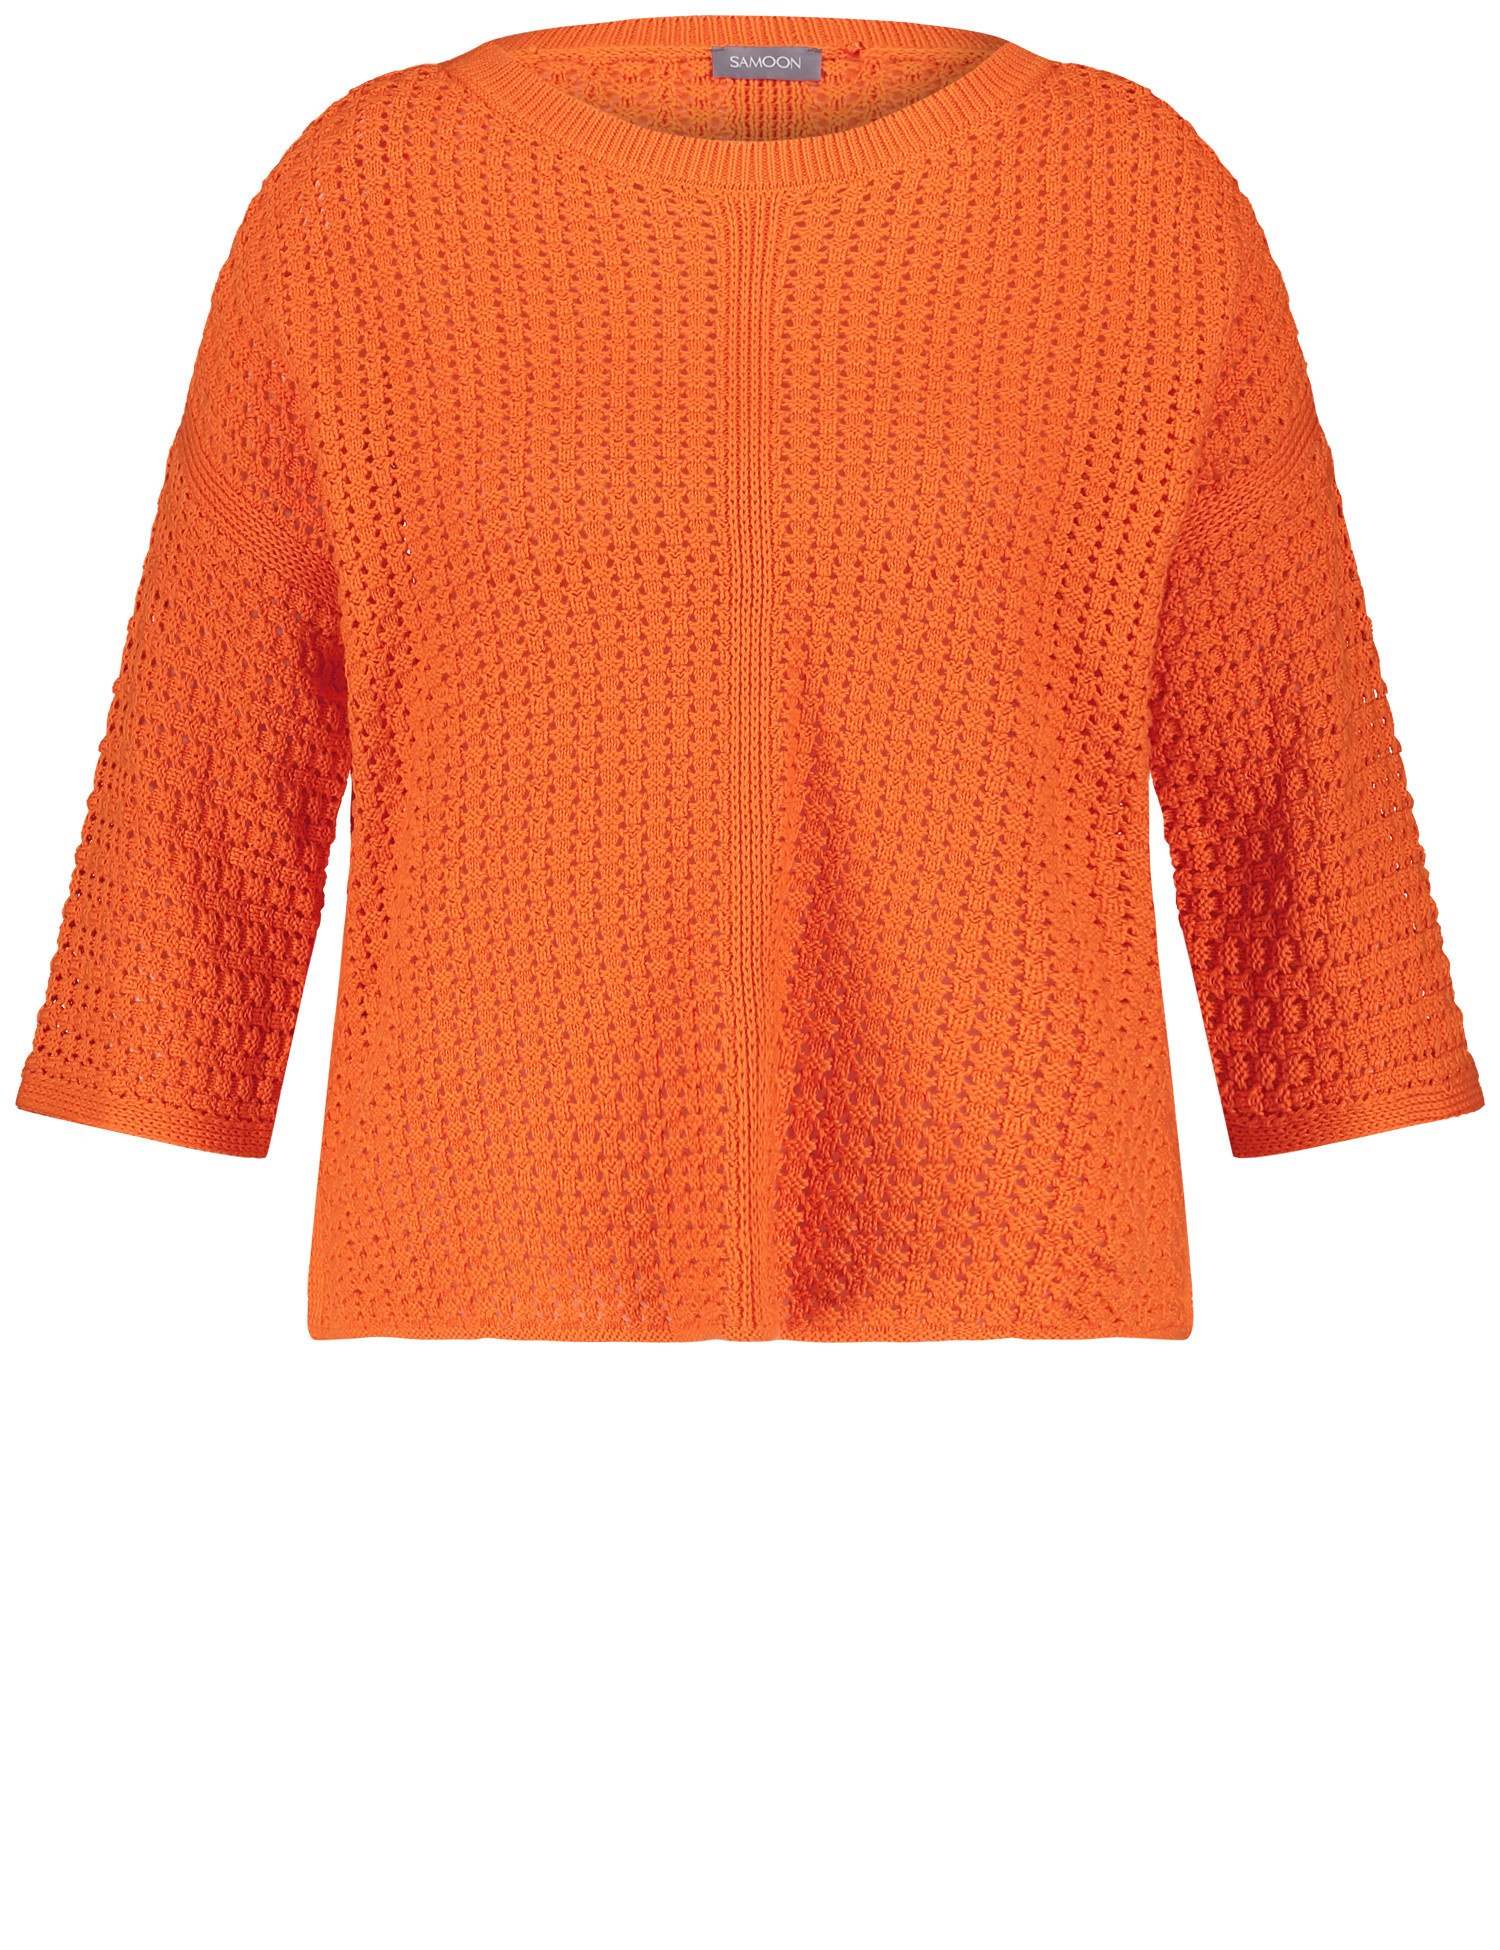 SAMOON Damen 3/4 Arm Pullover aus Lochstrick Rundhals Baumwolle Orange, 54 von SAMOON